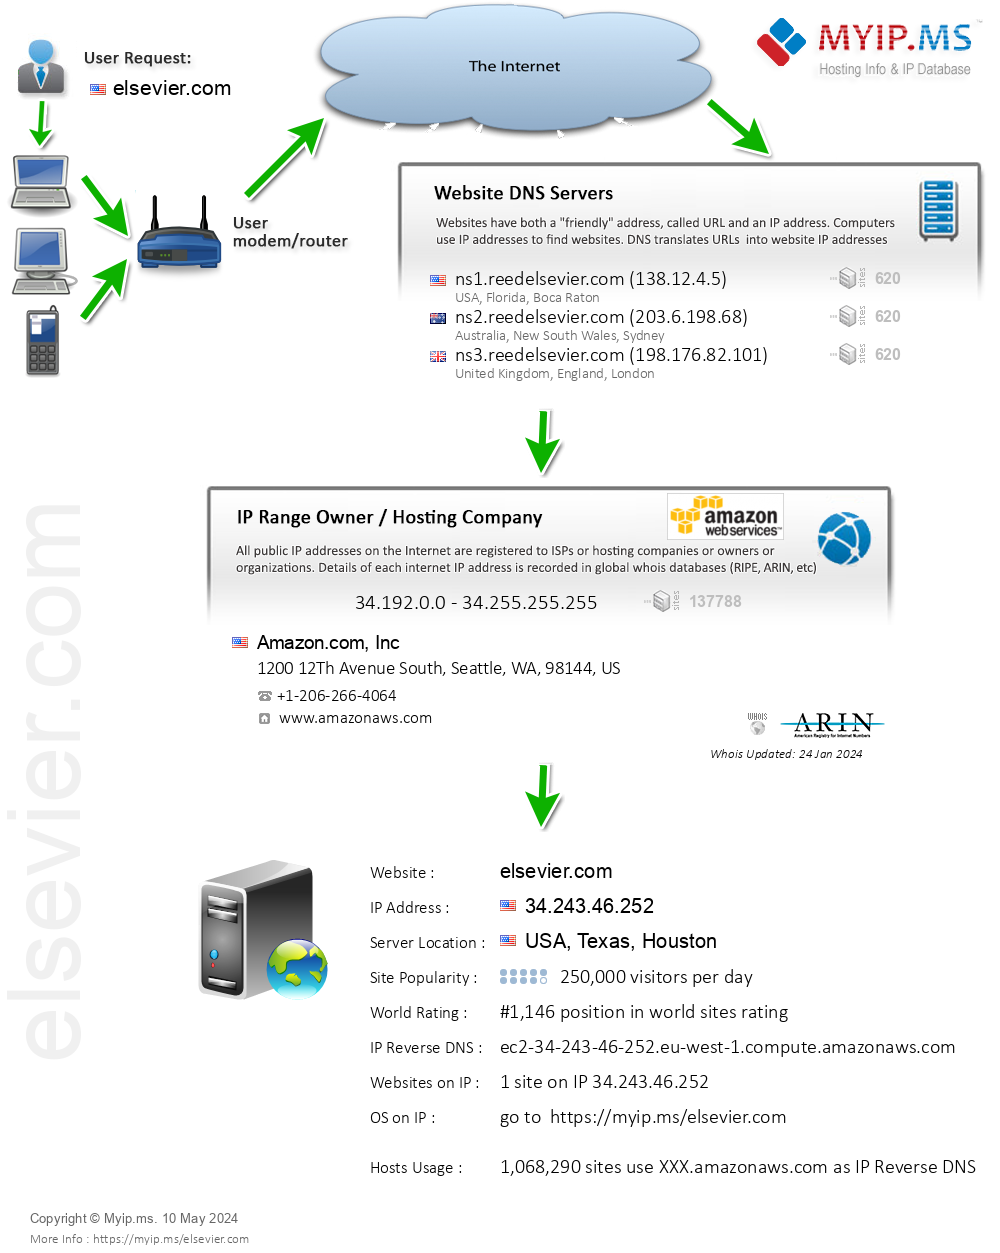 Elsevier.com - Website Hosting Visual IP Diagram